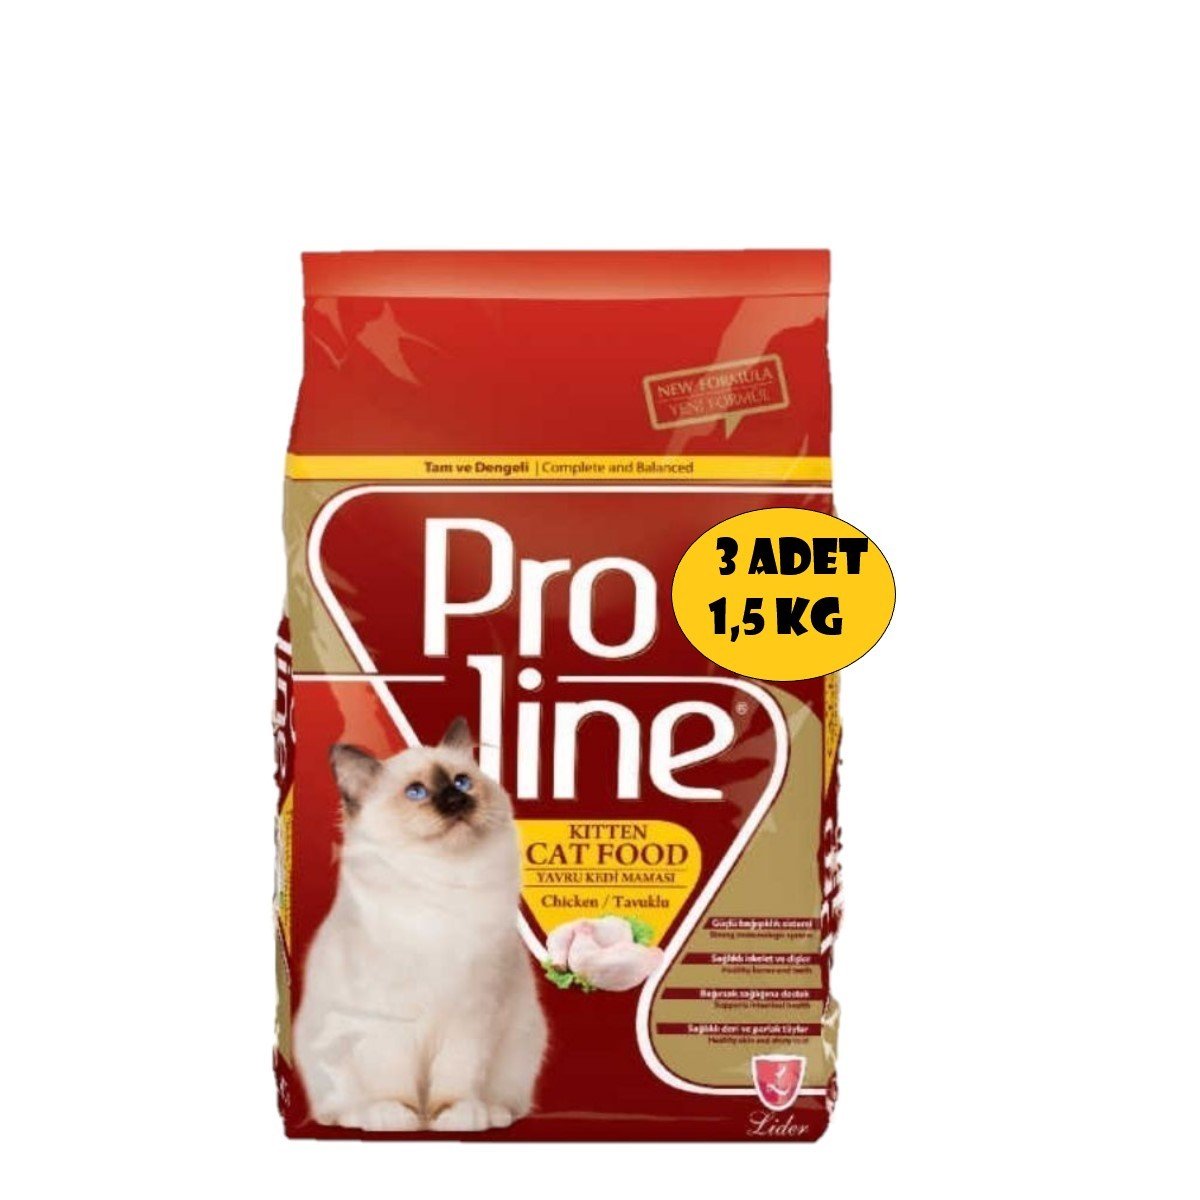 Proline Kitten Tavuklu Yavru Kedi Maması 1,5 Kg x 3 Adet